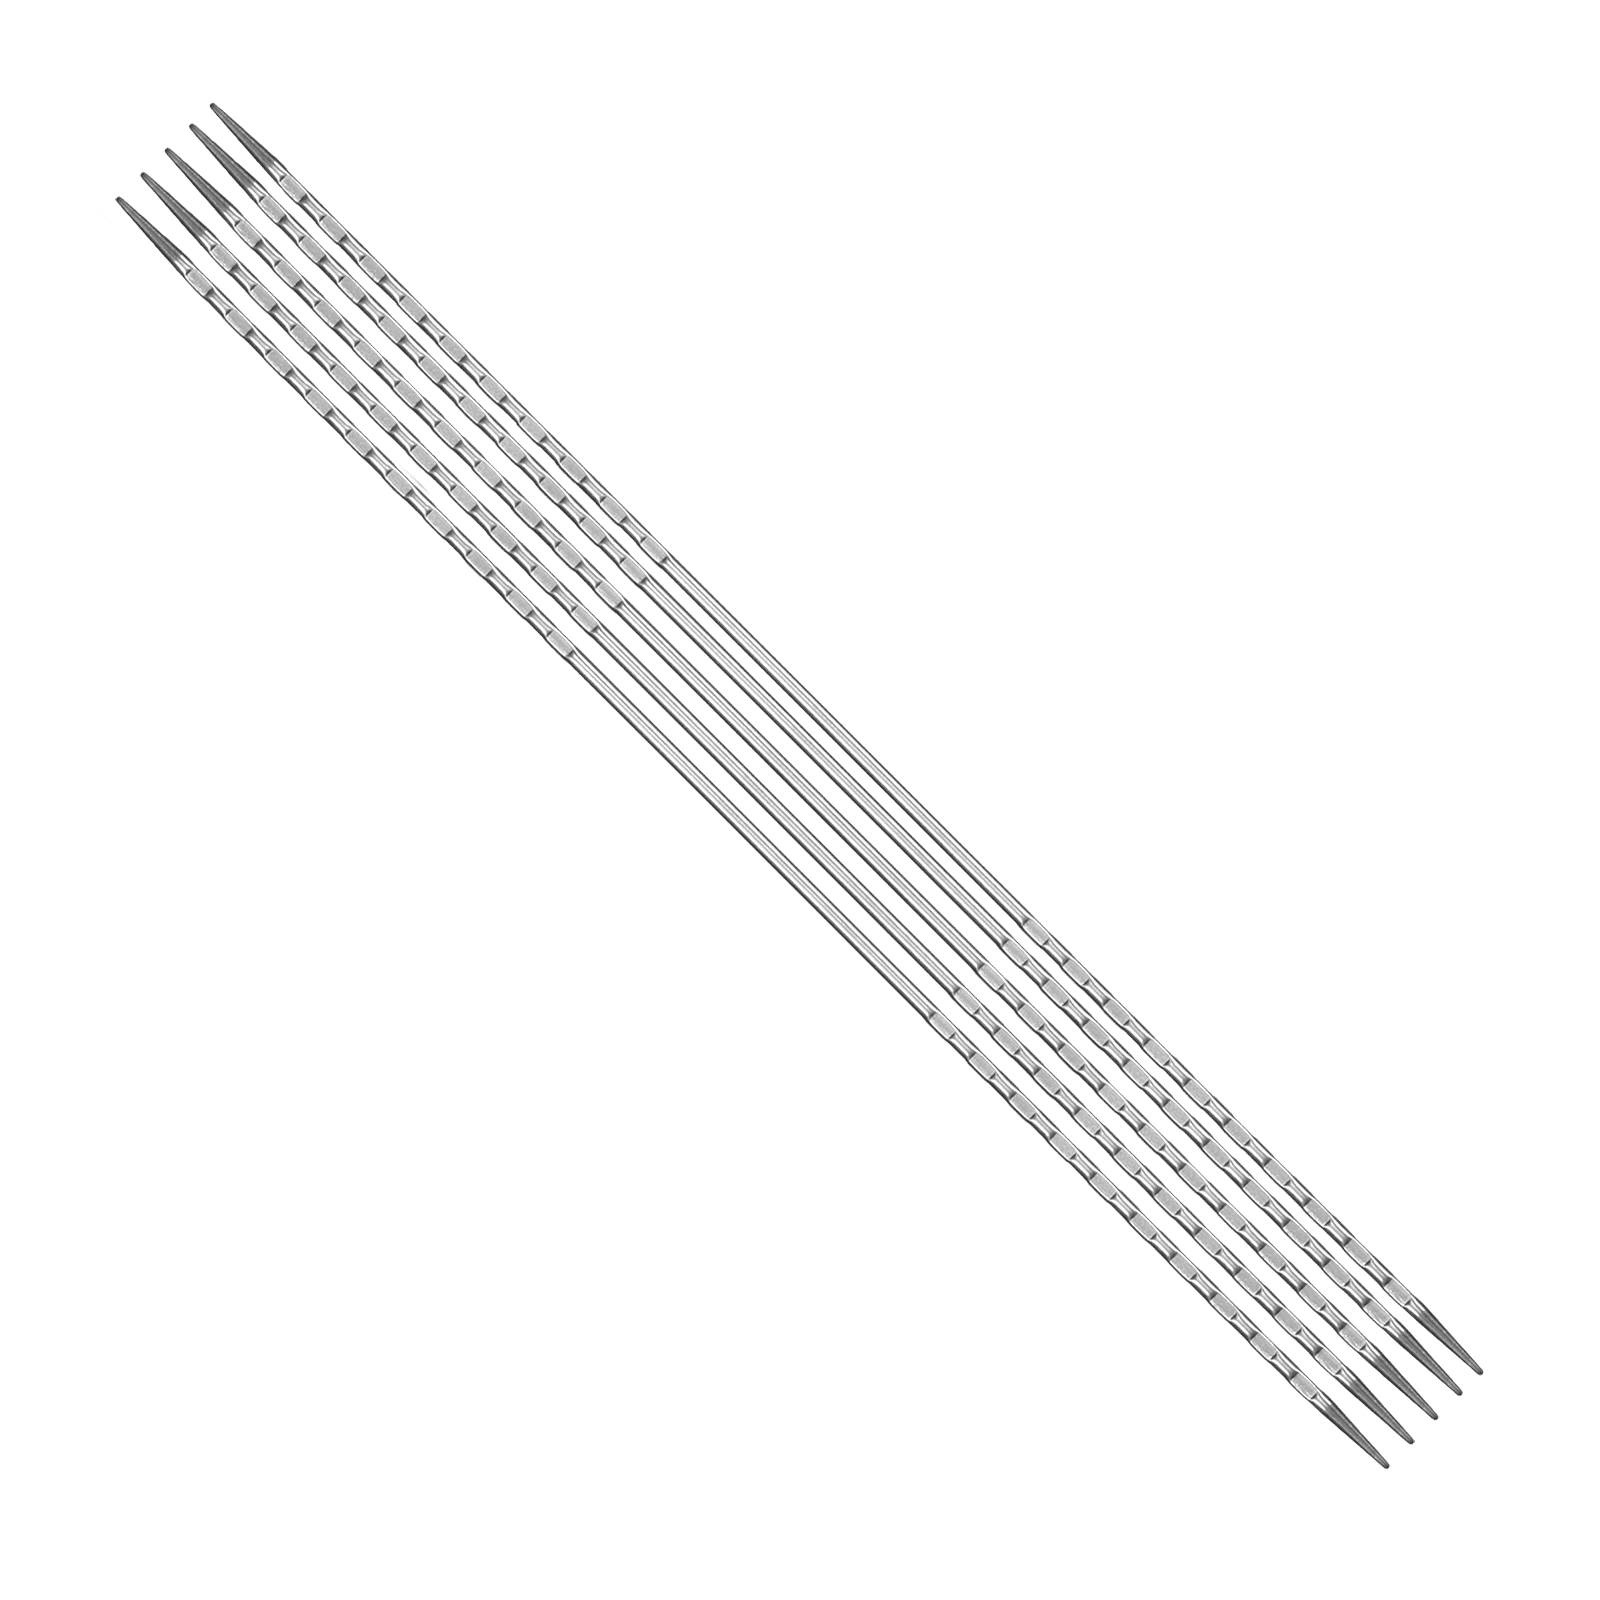 170 7 addiNovel Quintet LACE stocking knitting needles needle set 25mm madeinGermany free1 4c addi-Novelties 2023